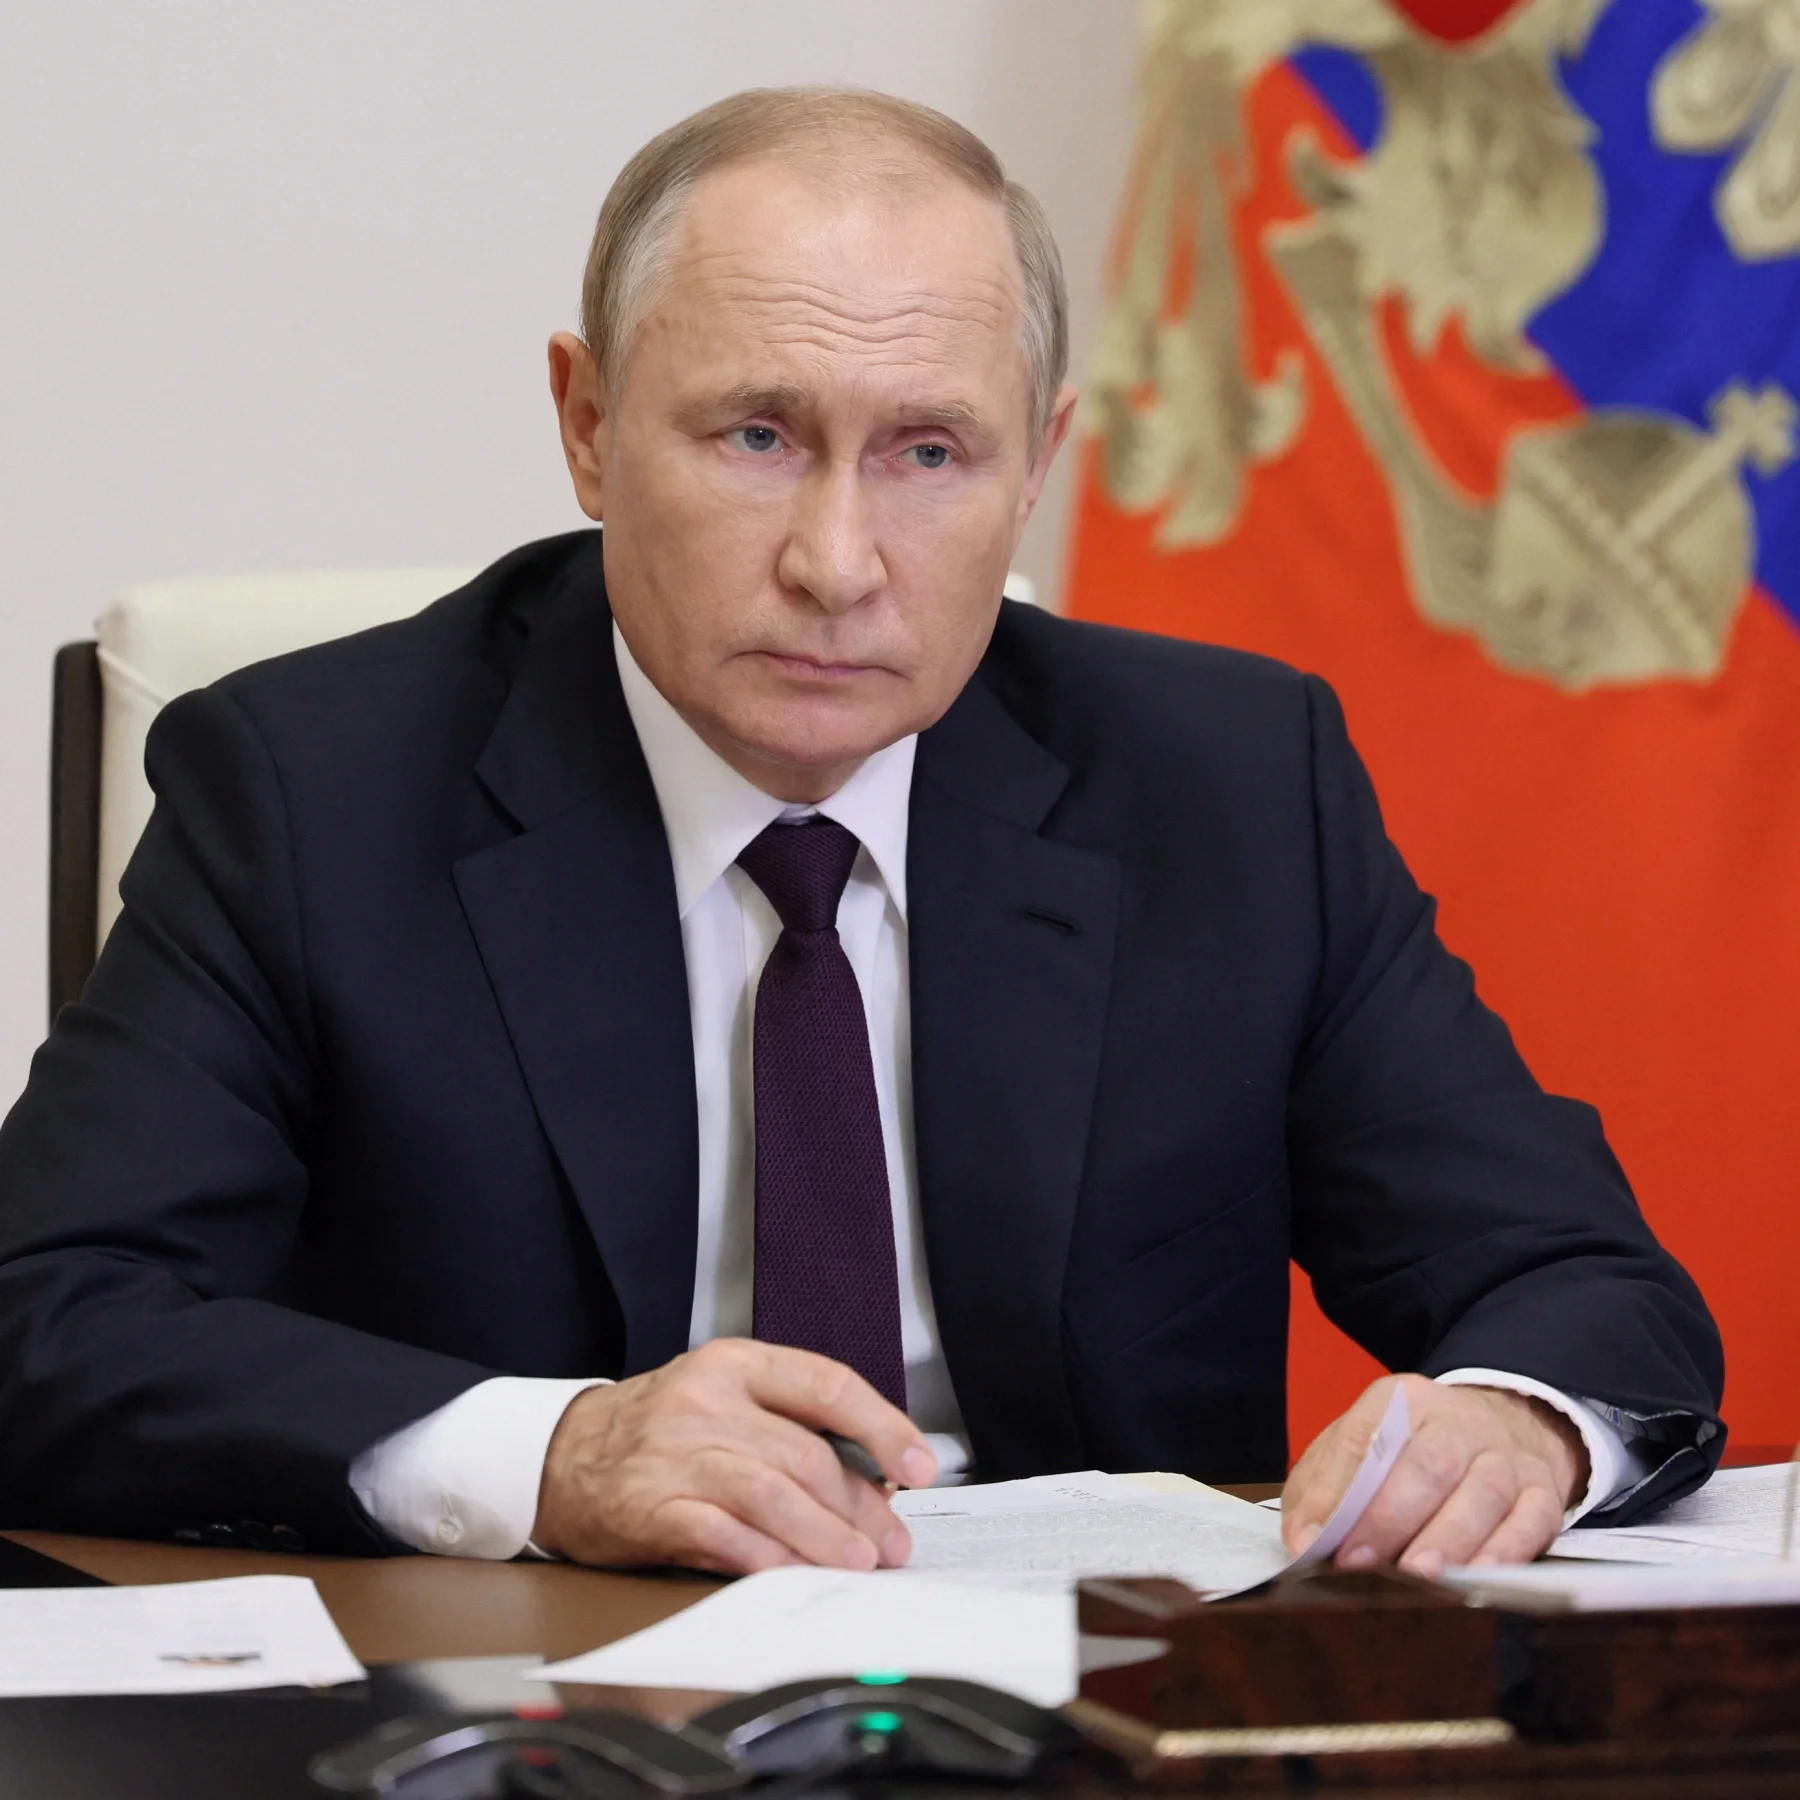 الرئيس الروسي بوتين:  الجزائر تحتل أعلى المراتب ضمن شركاء روسيا